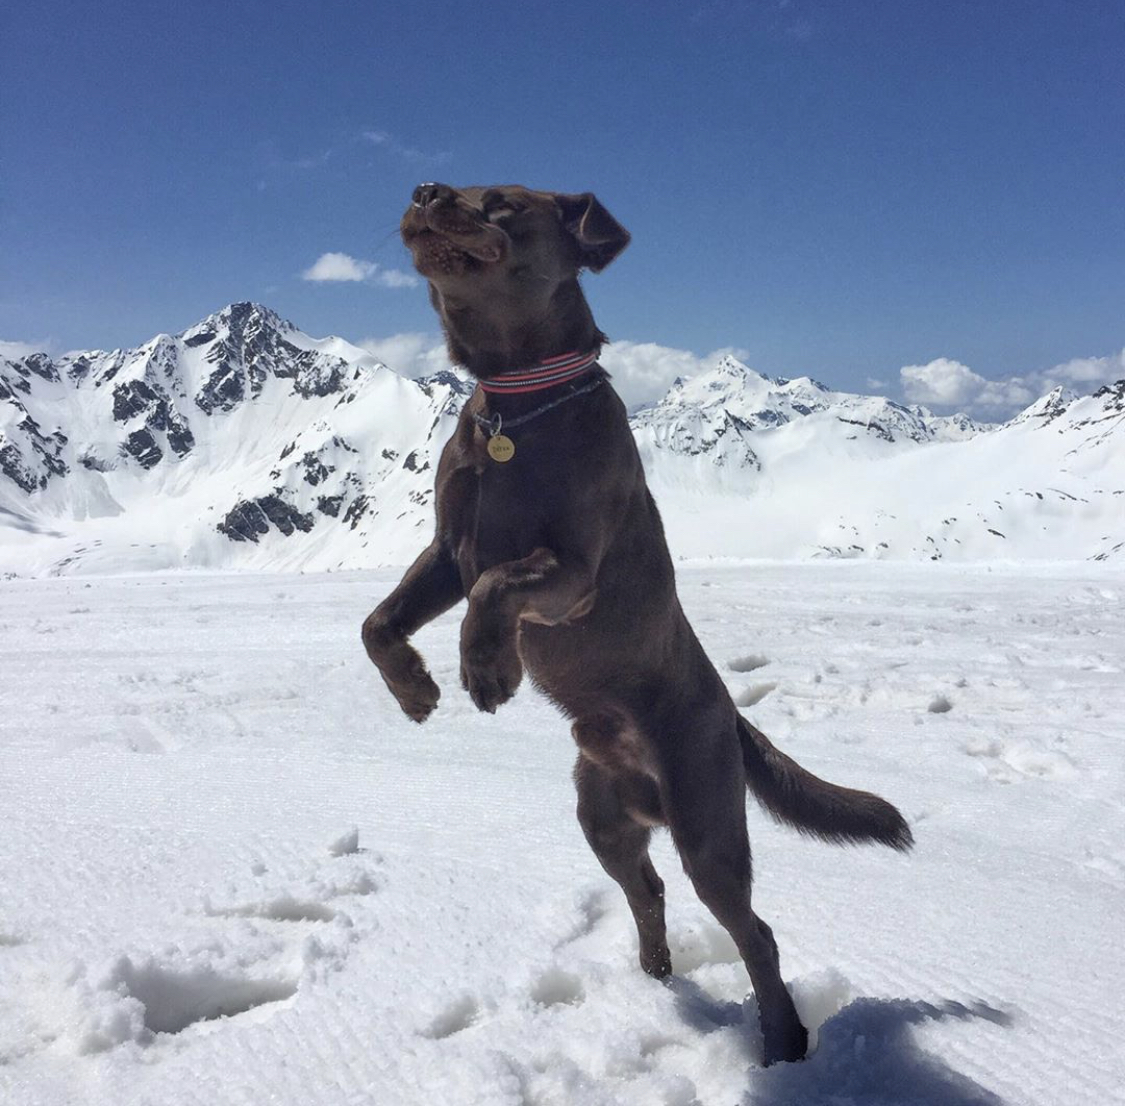 A Labrador retriever jumping in snow